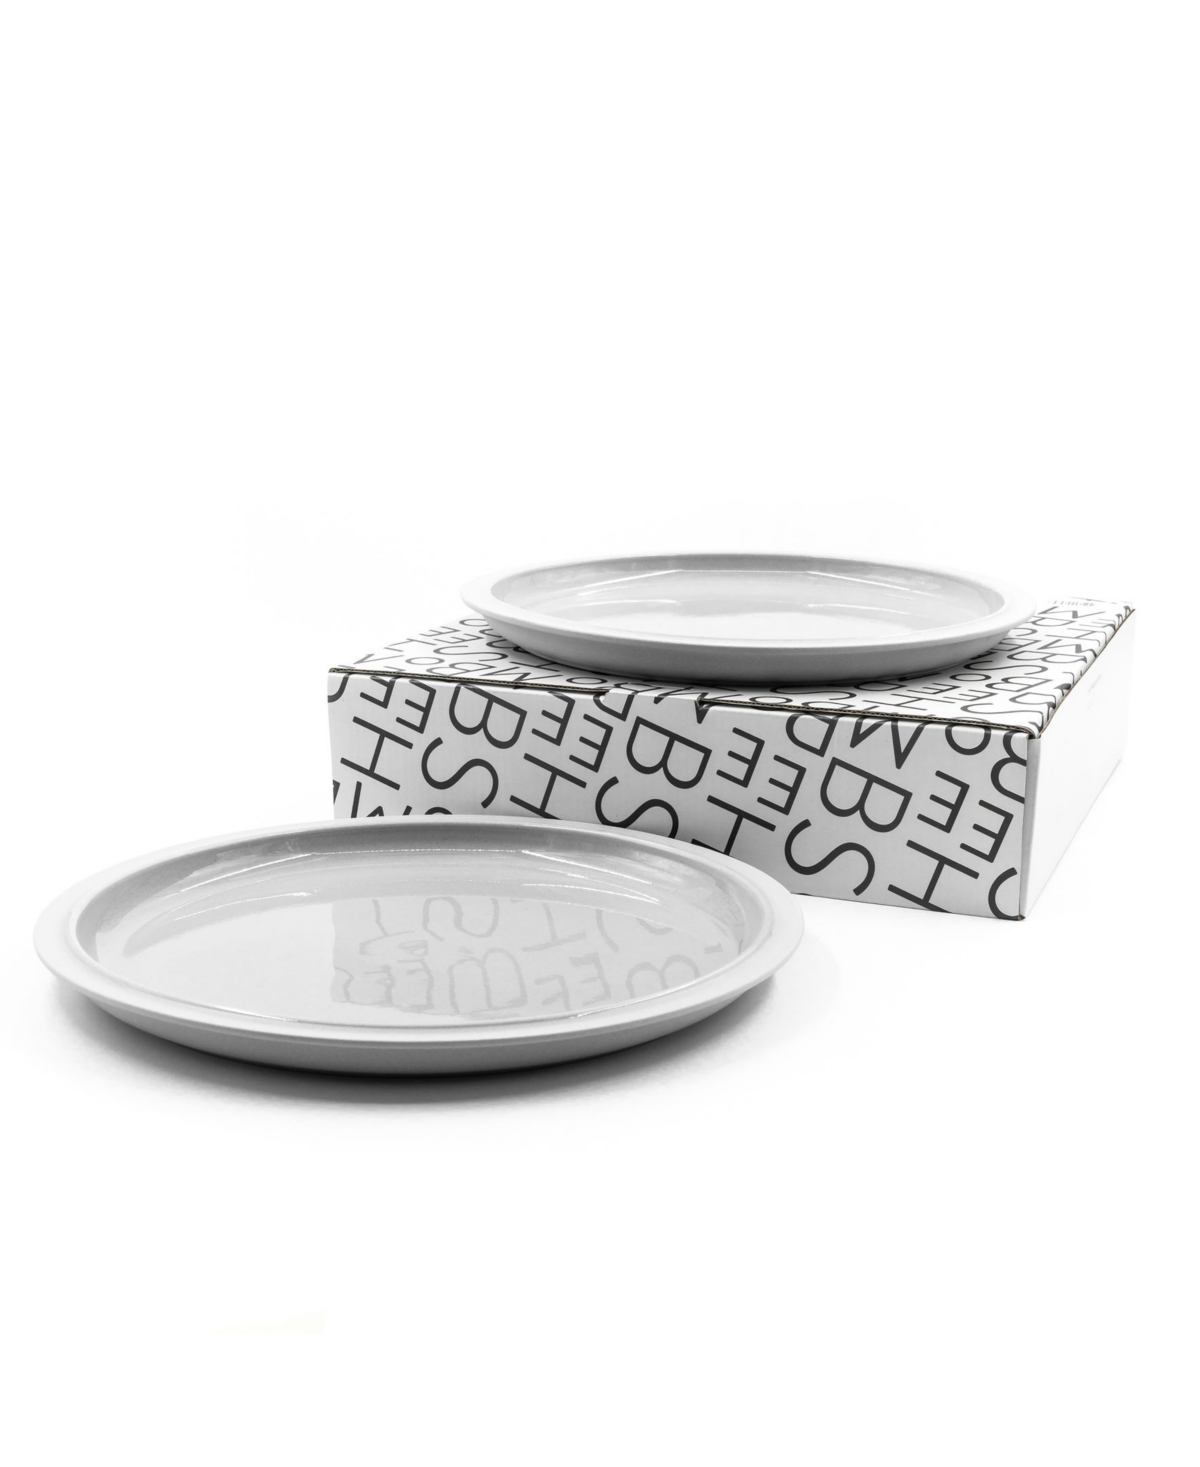 10526788 Bomshbee Tinge Porcelain Dinner Plates - Set of 2 sku 10526788